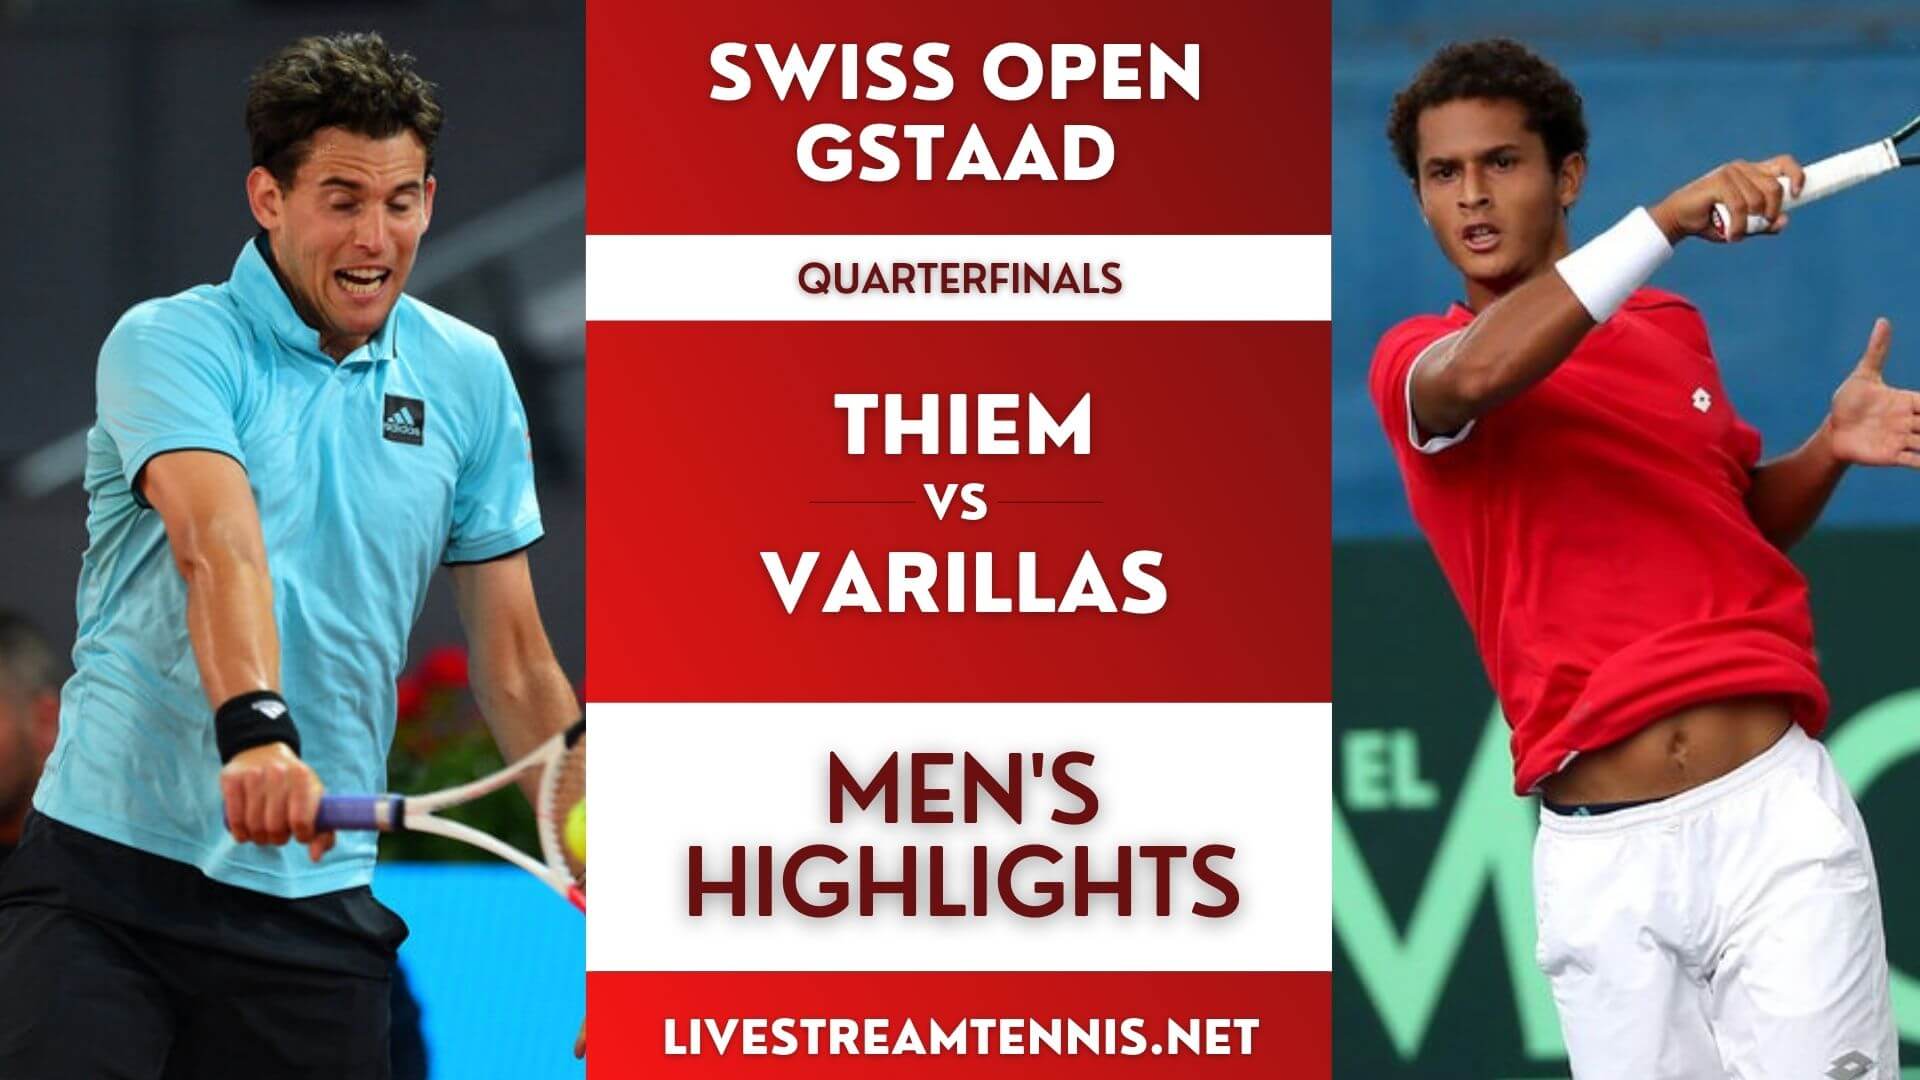 Swiss Open ATP Quarterfinal 4 Highlights 2022